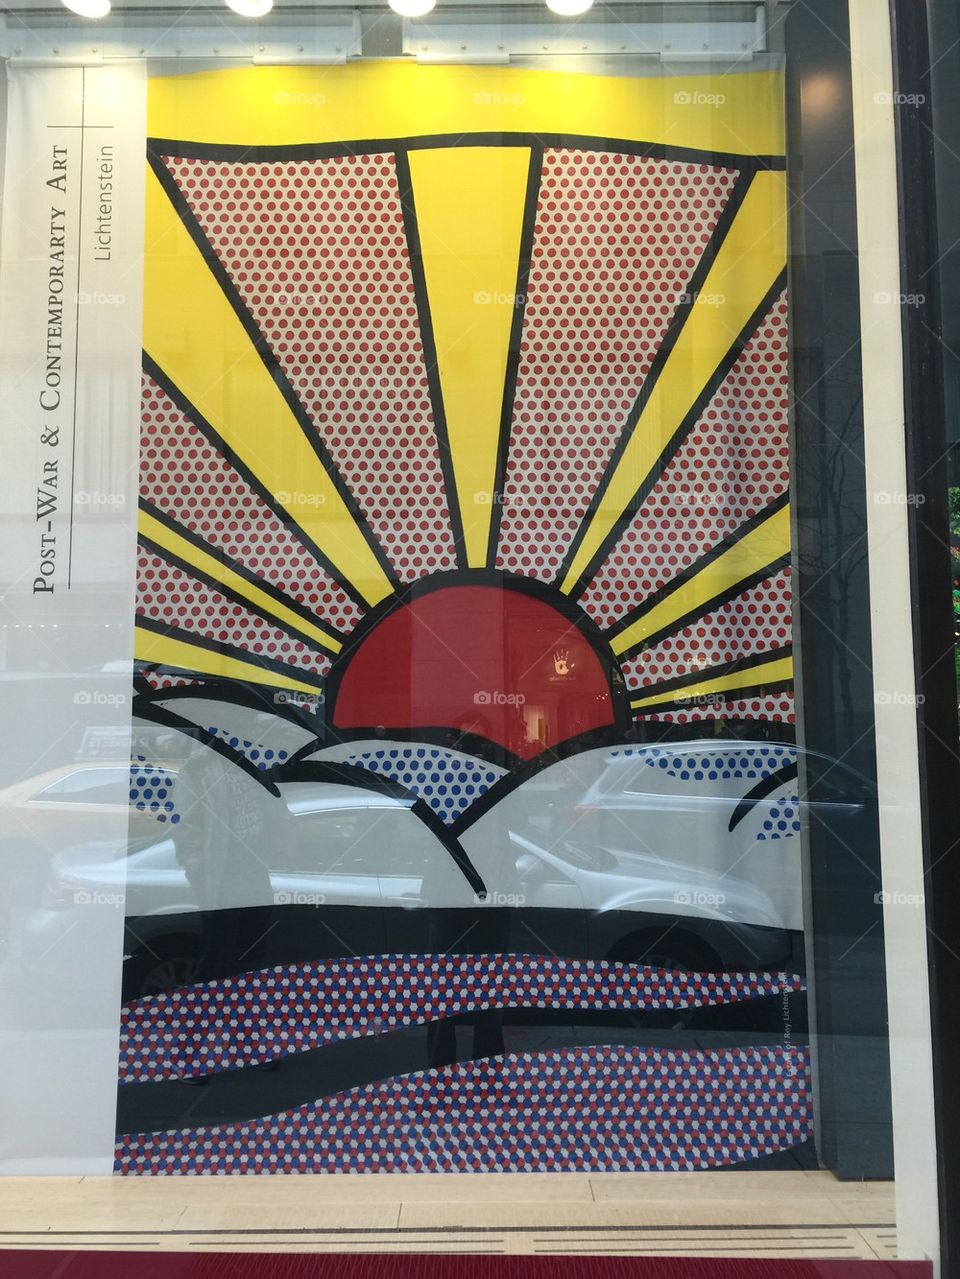 View of a Lichtenstein artpiece